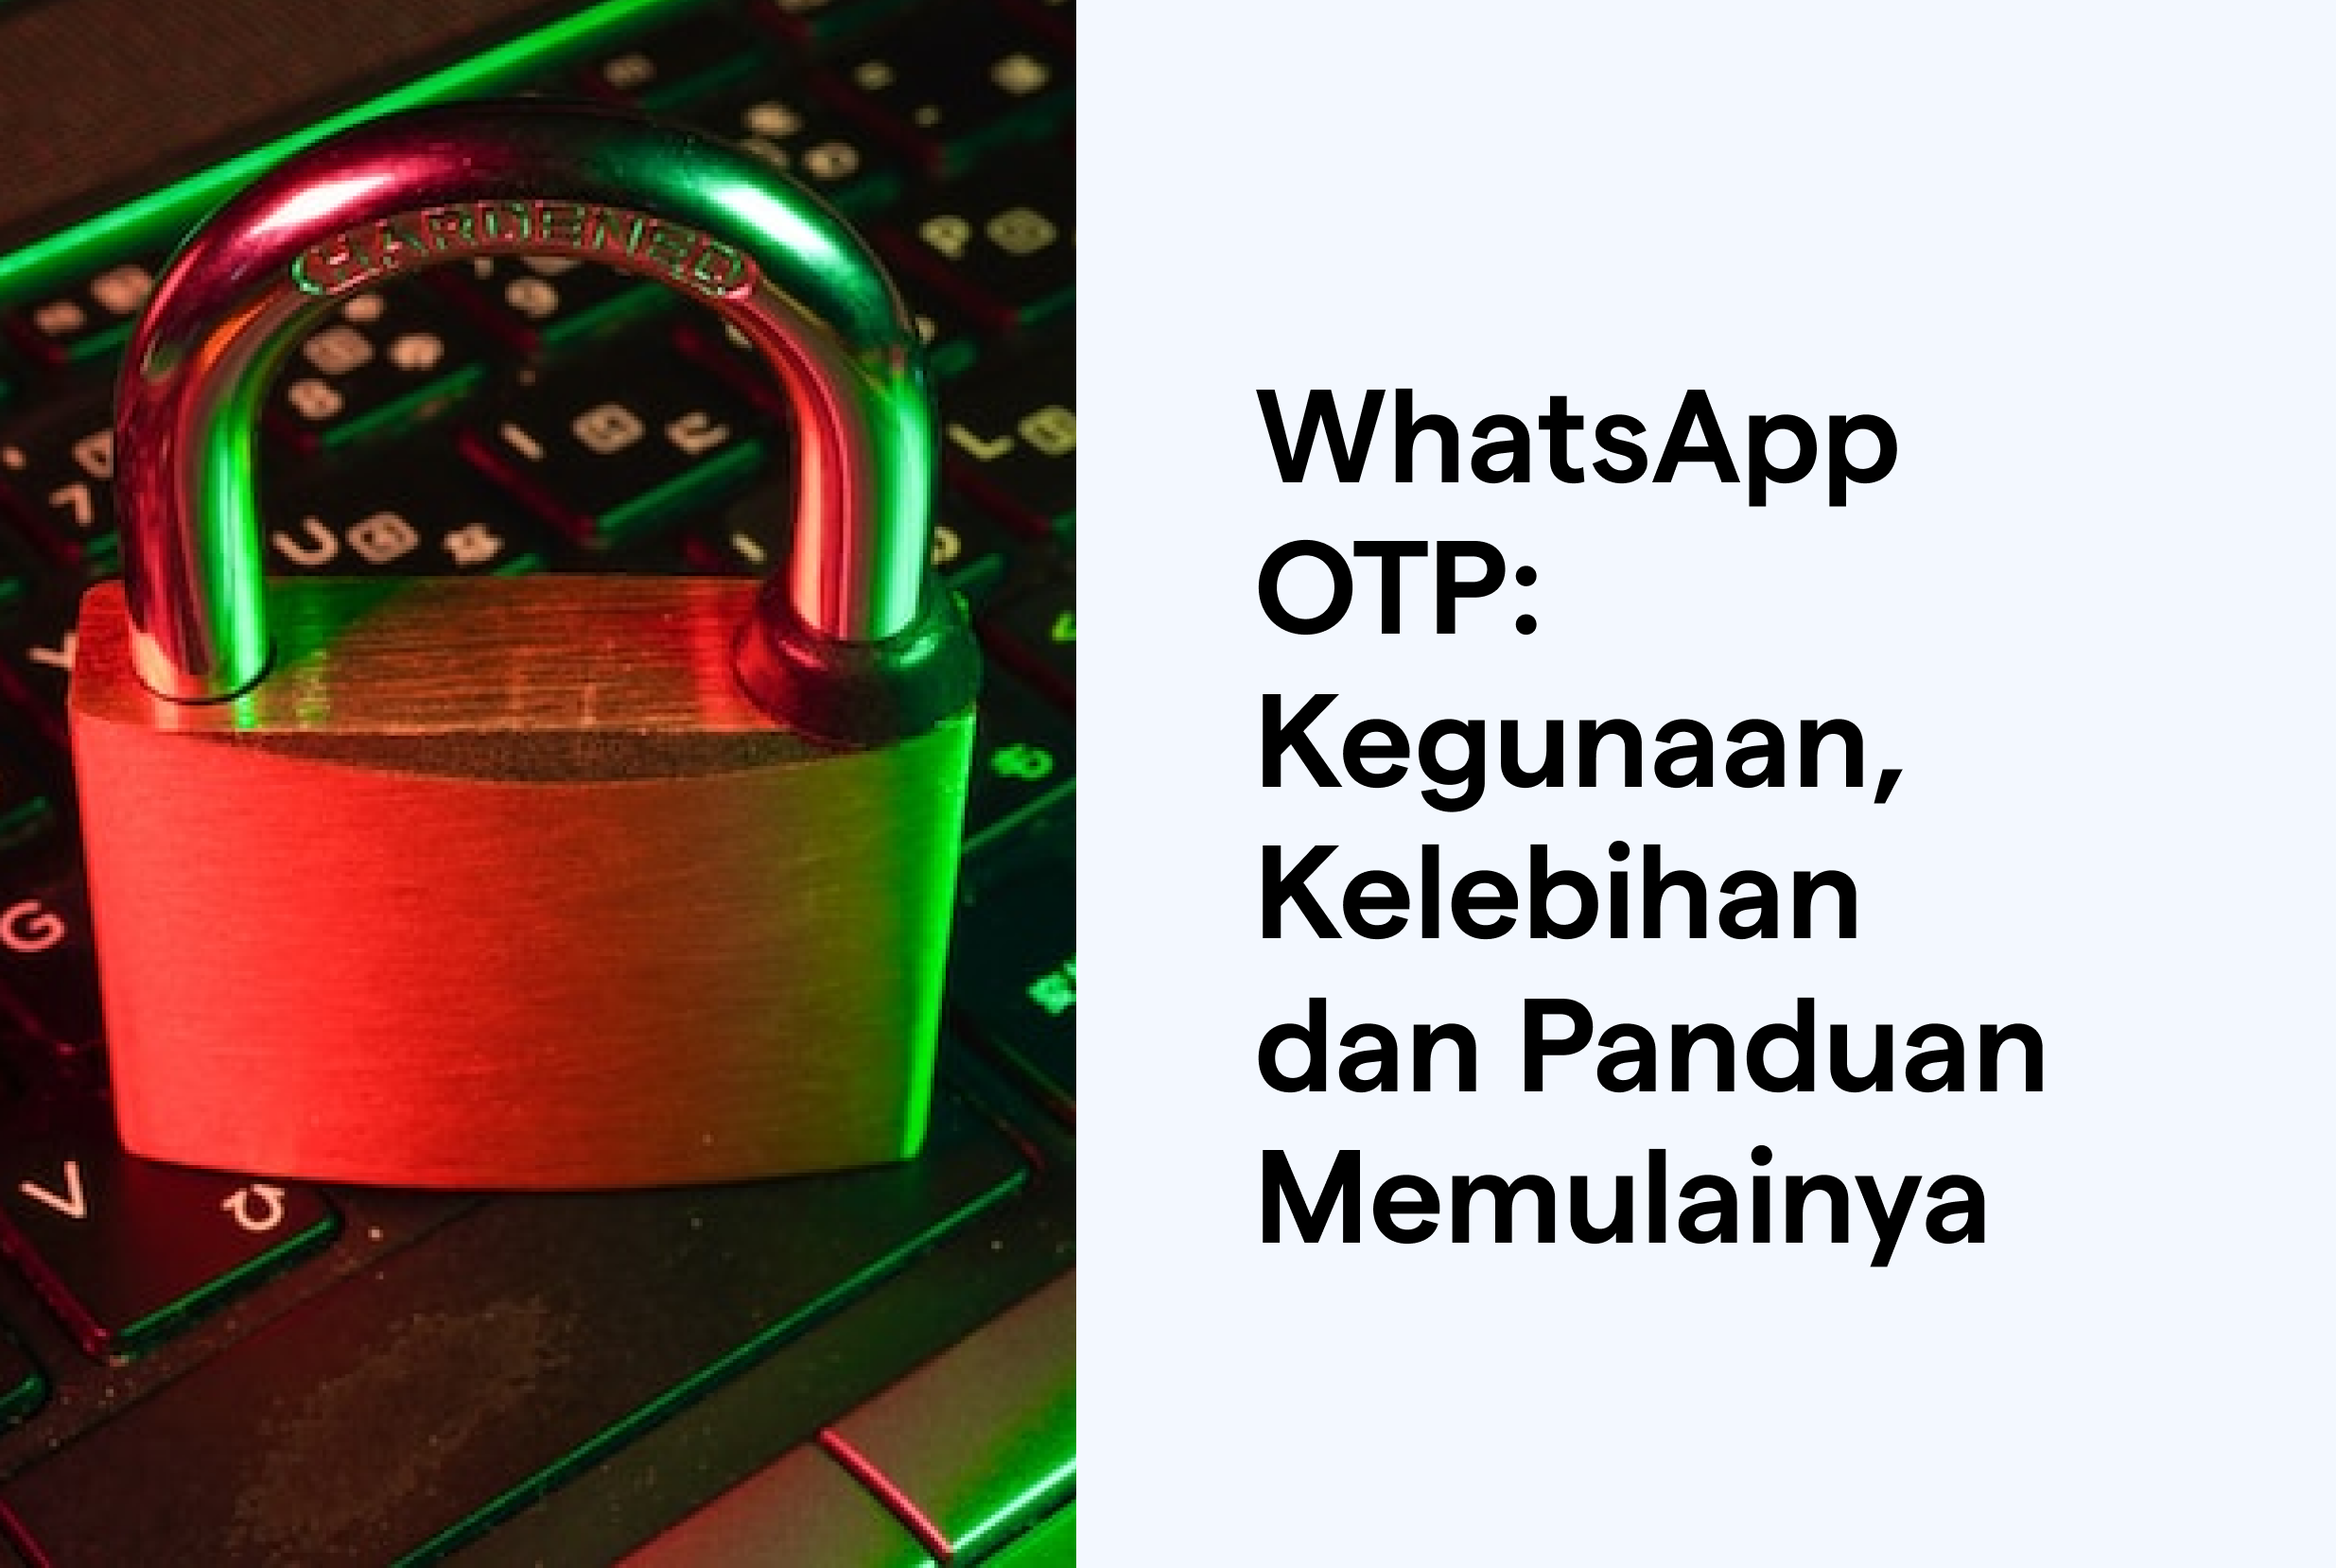 WhatsApp OTP: Kegunaan, Kelebihan dan Panduan Memulainya